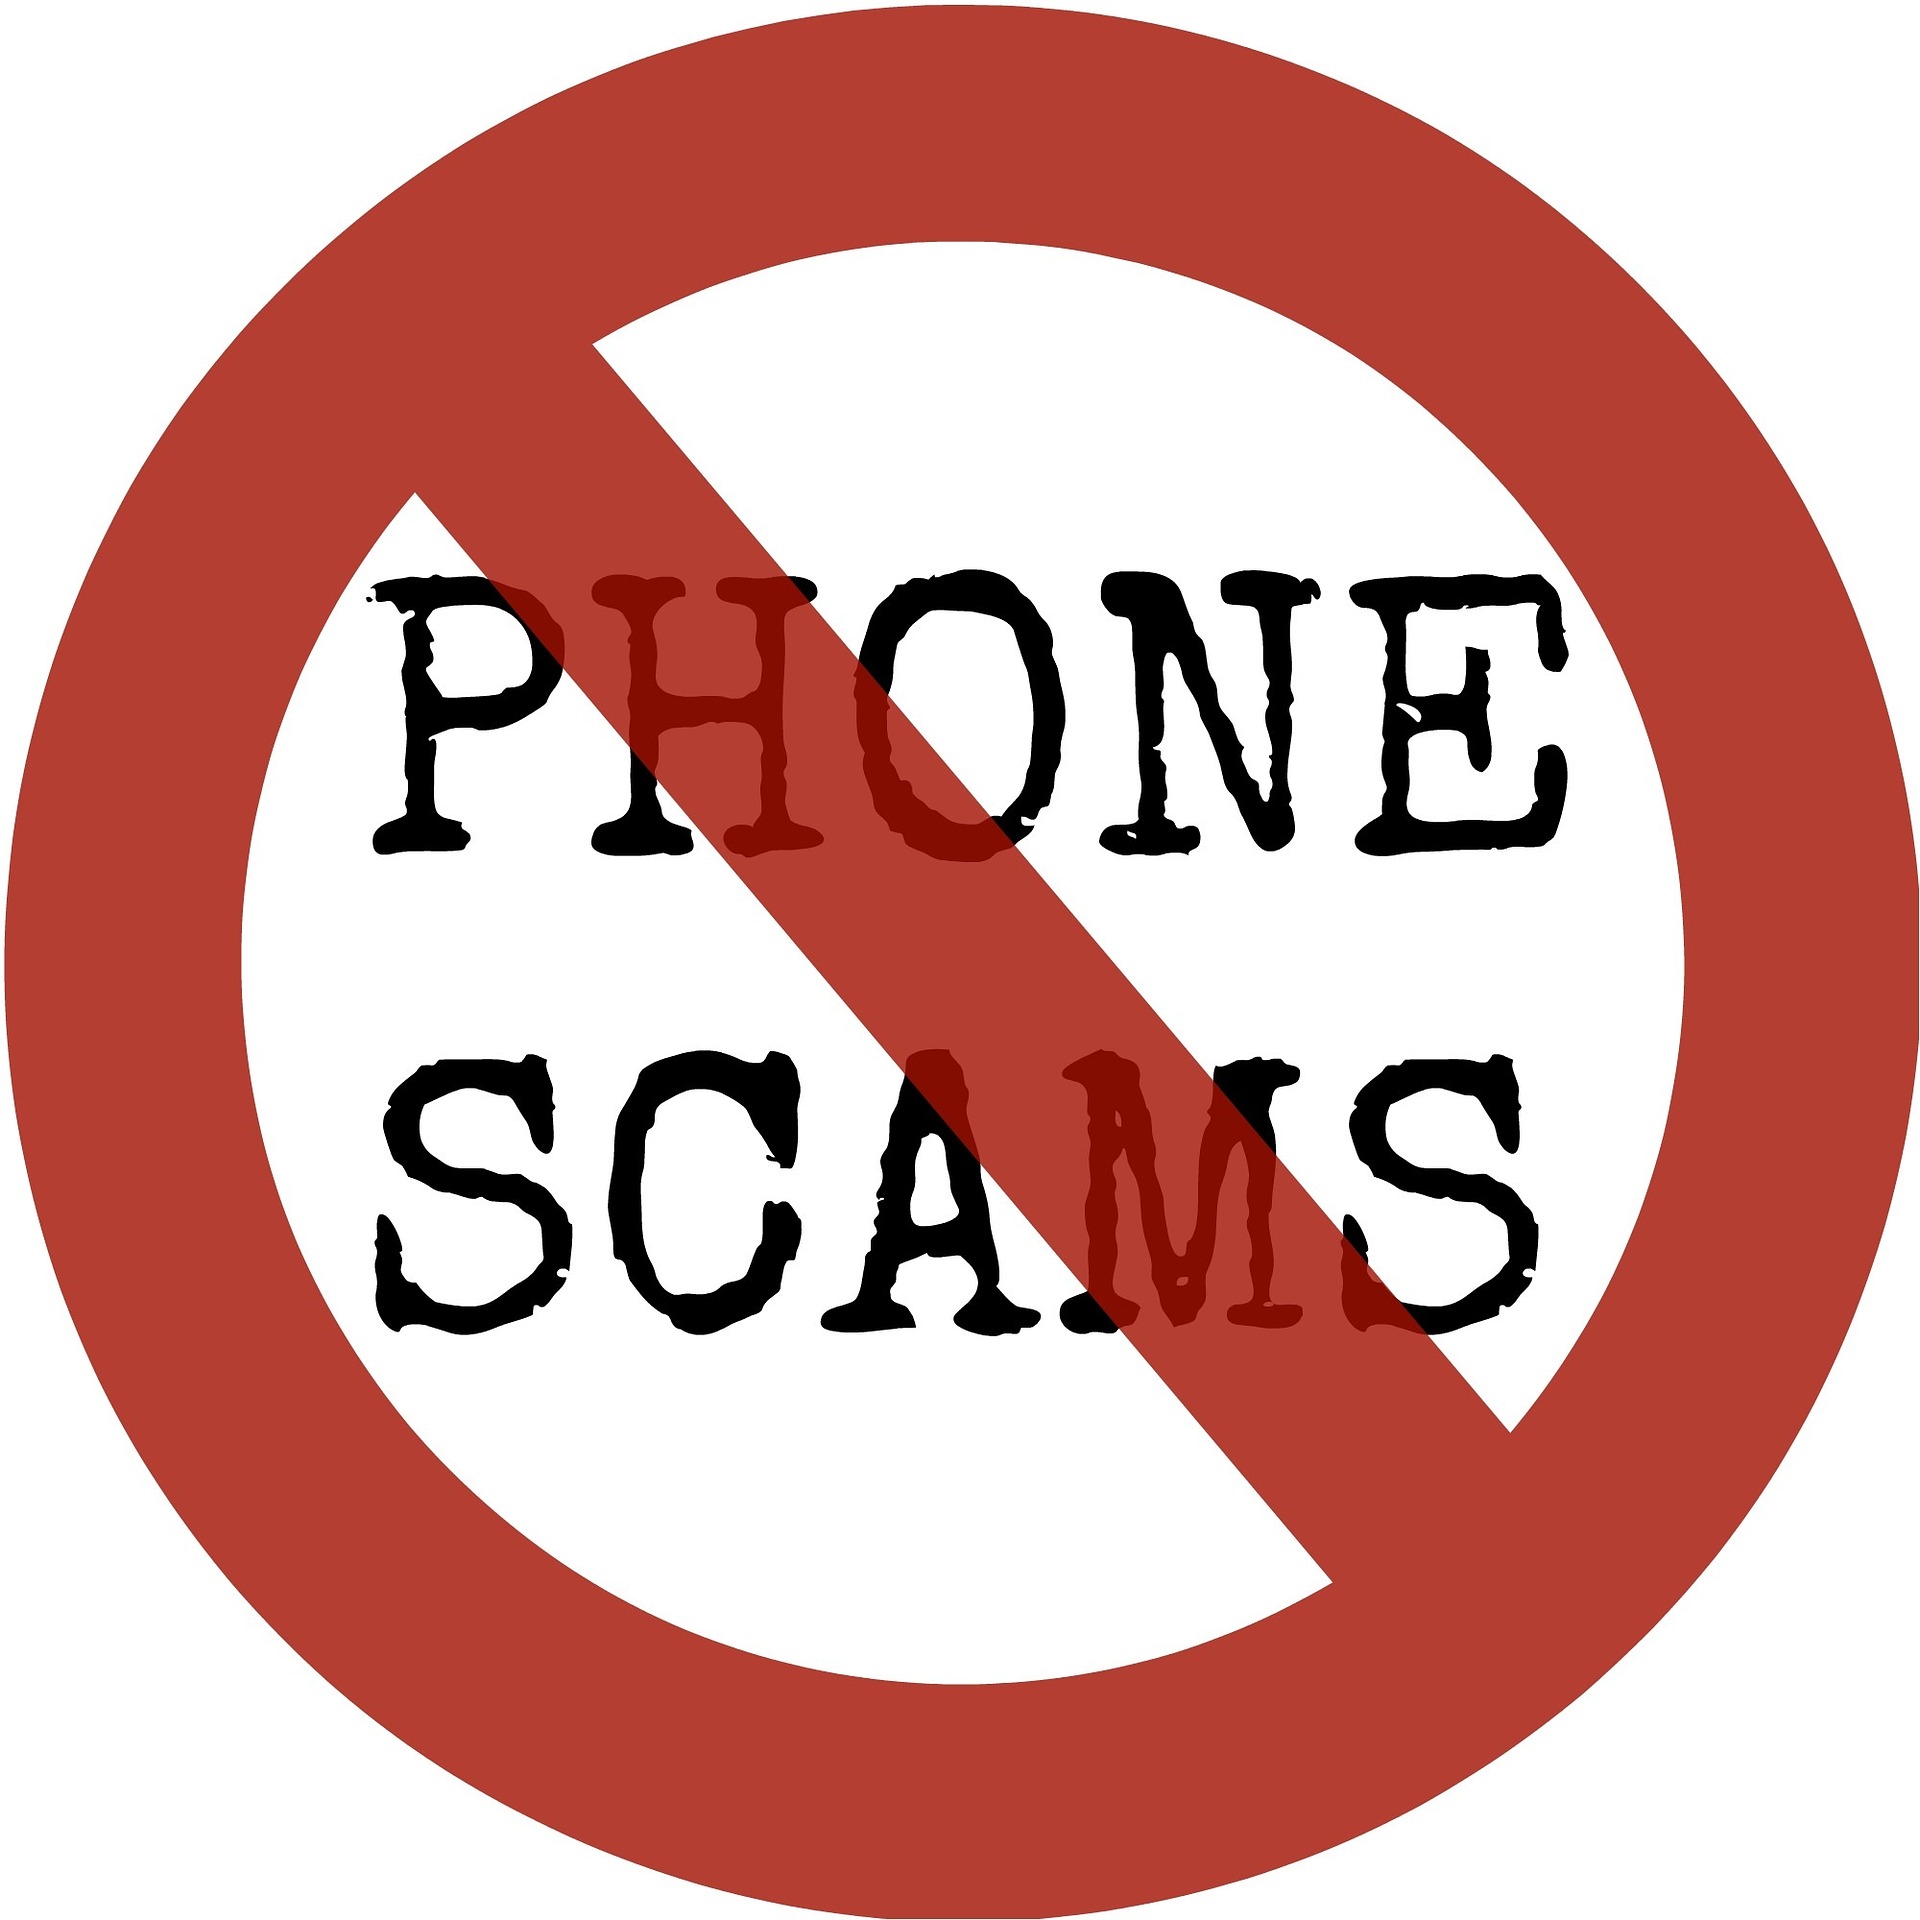 Schenkeveld Advocaten - phone scam